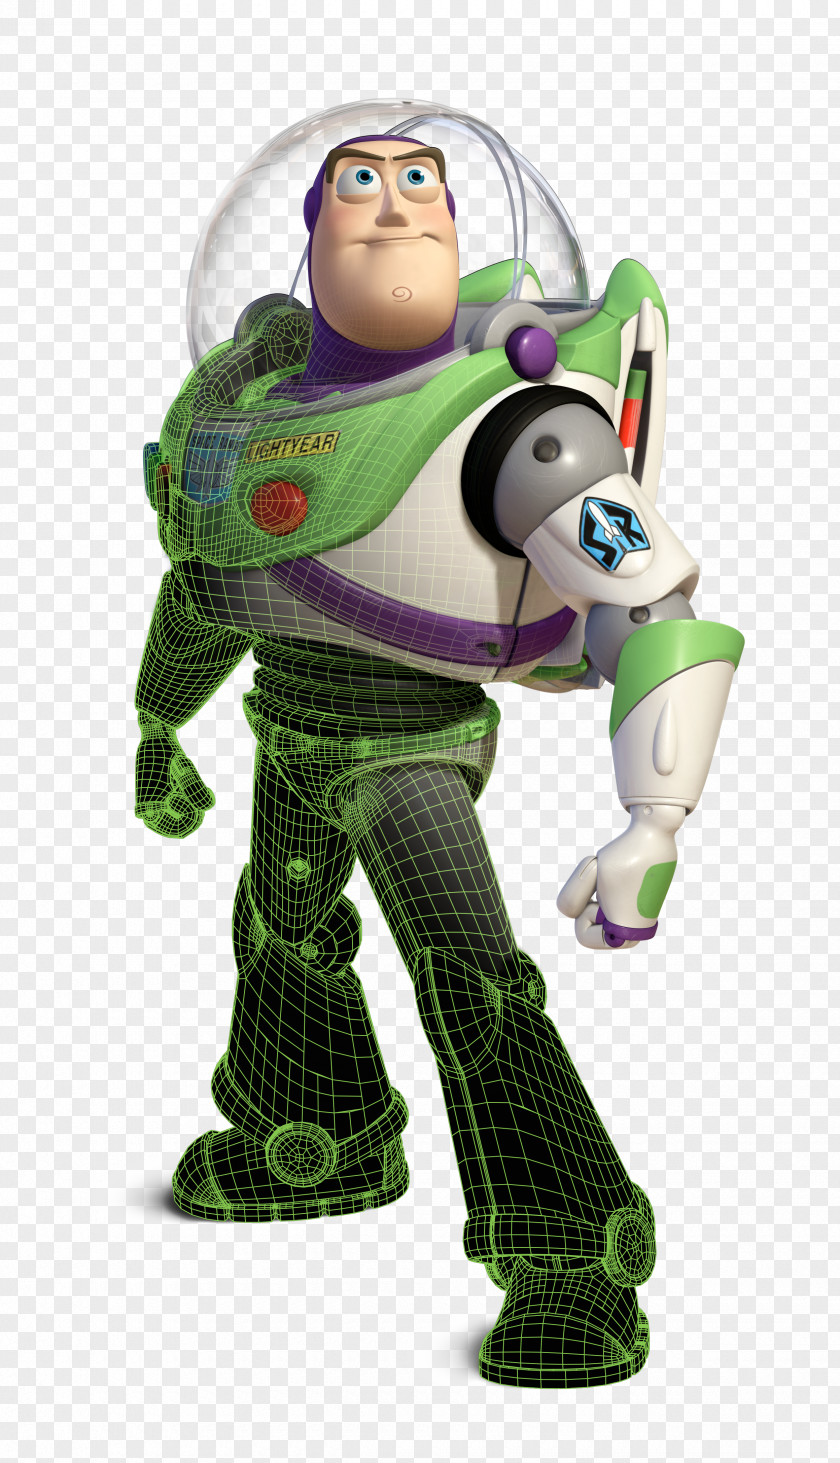 Pixar Toy Story Buzz Lightyear Sheriff Woody Jessie Andrew Stanton PNG